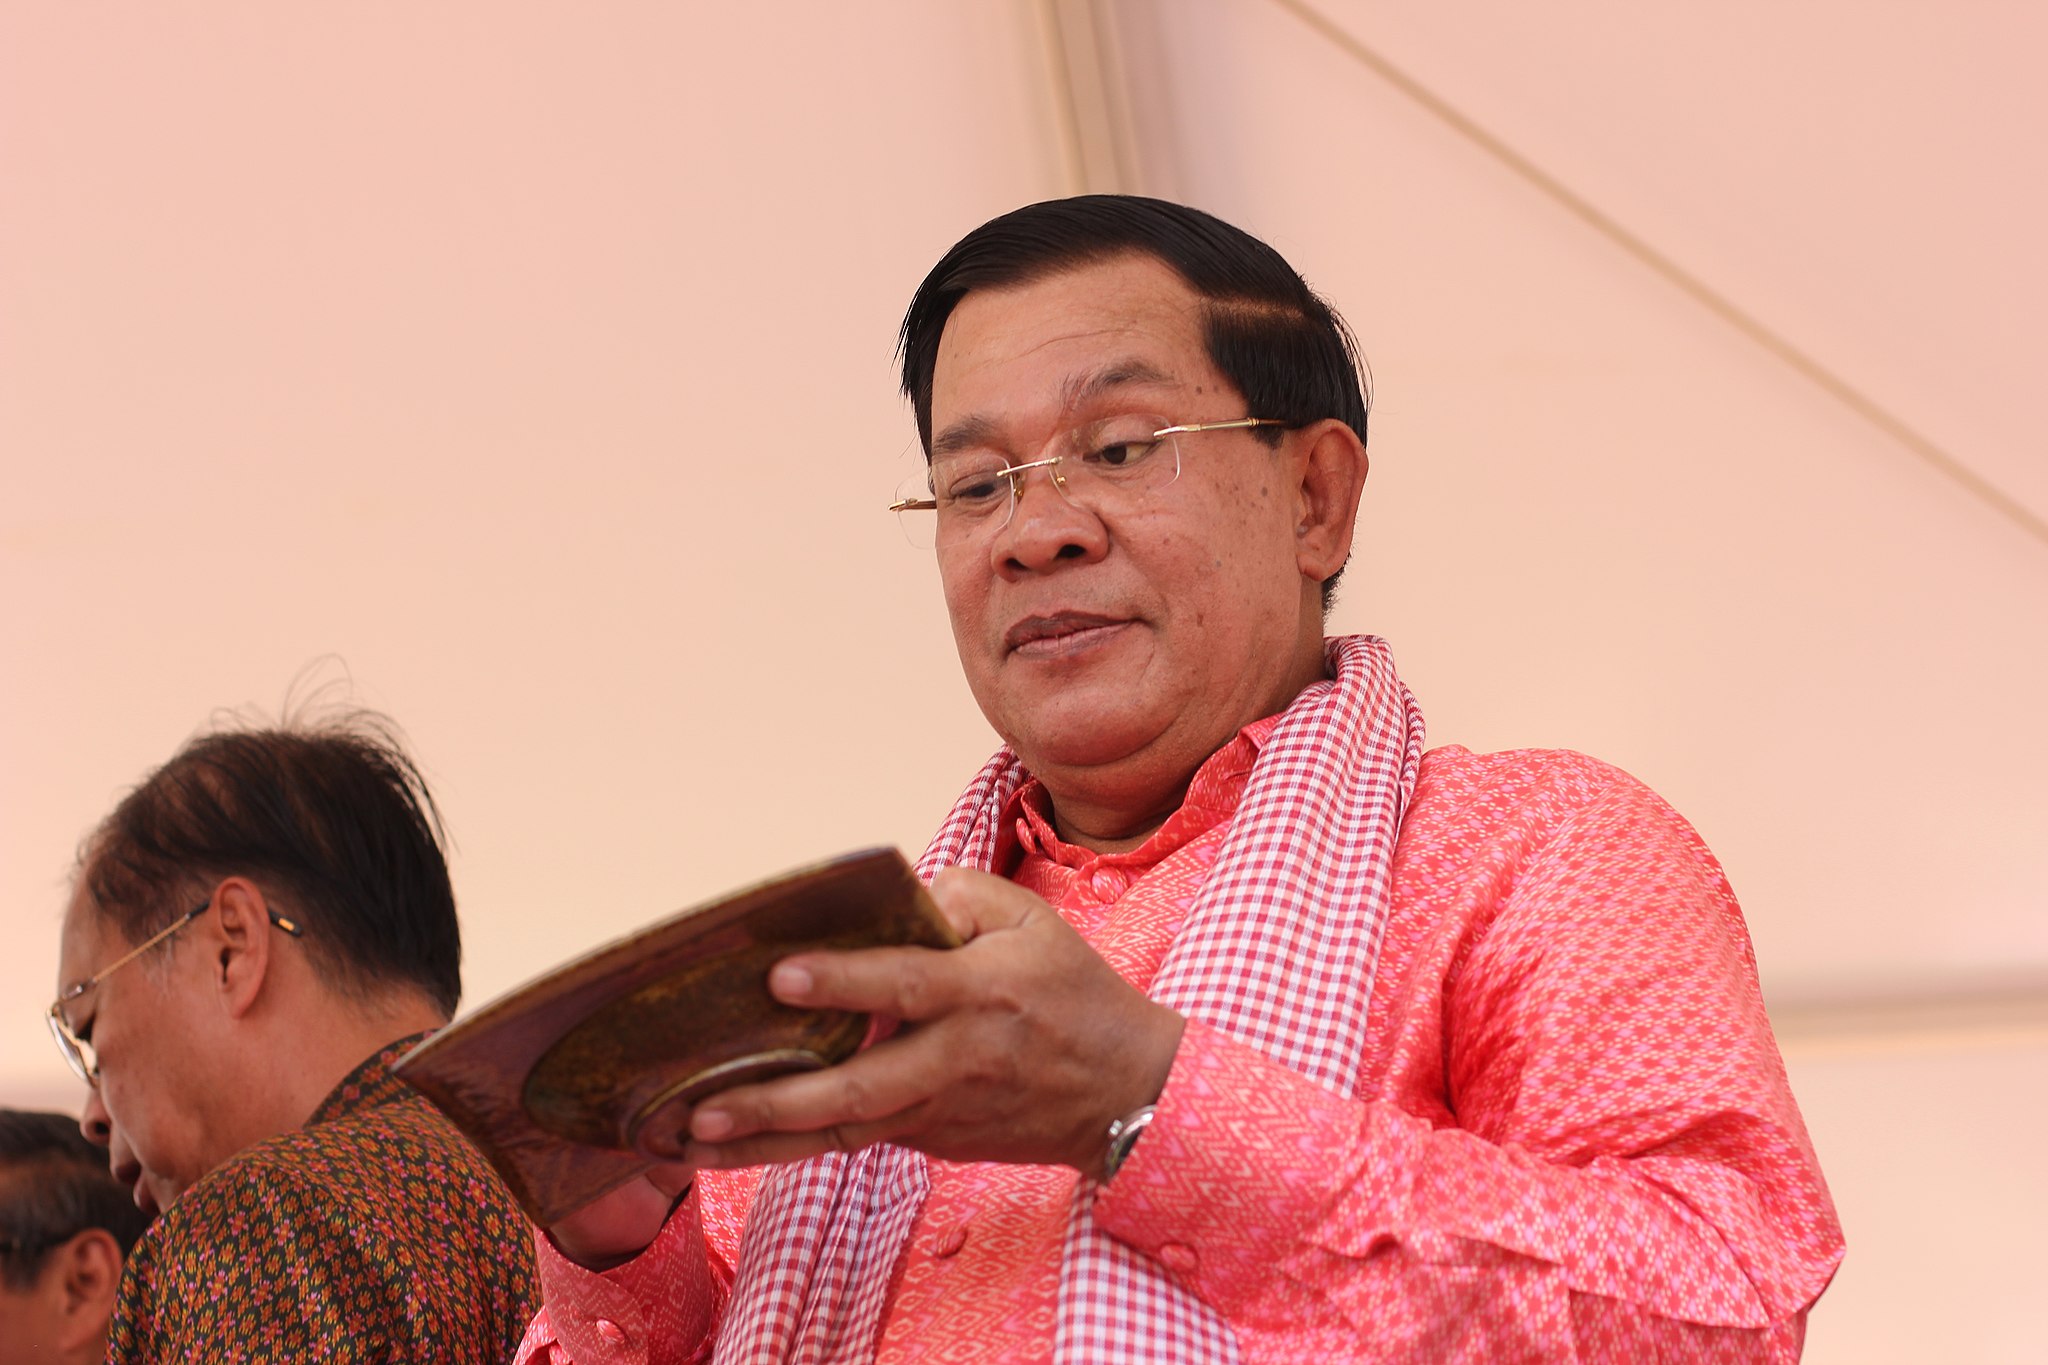 Meta refuses to suspend Facebook account of former Cambodia PM Hun Sen